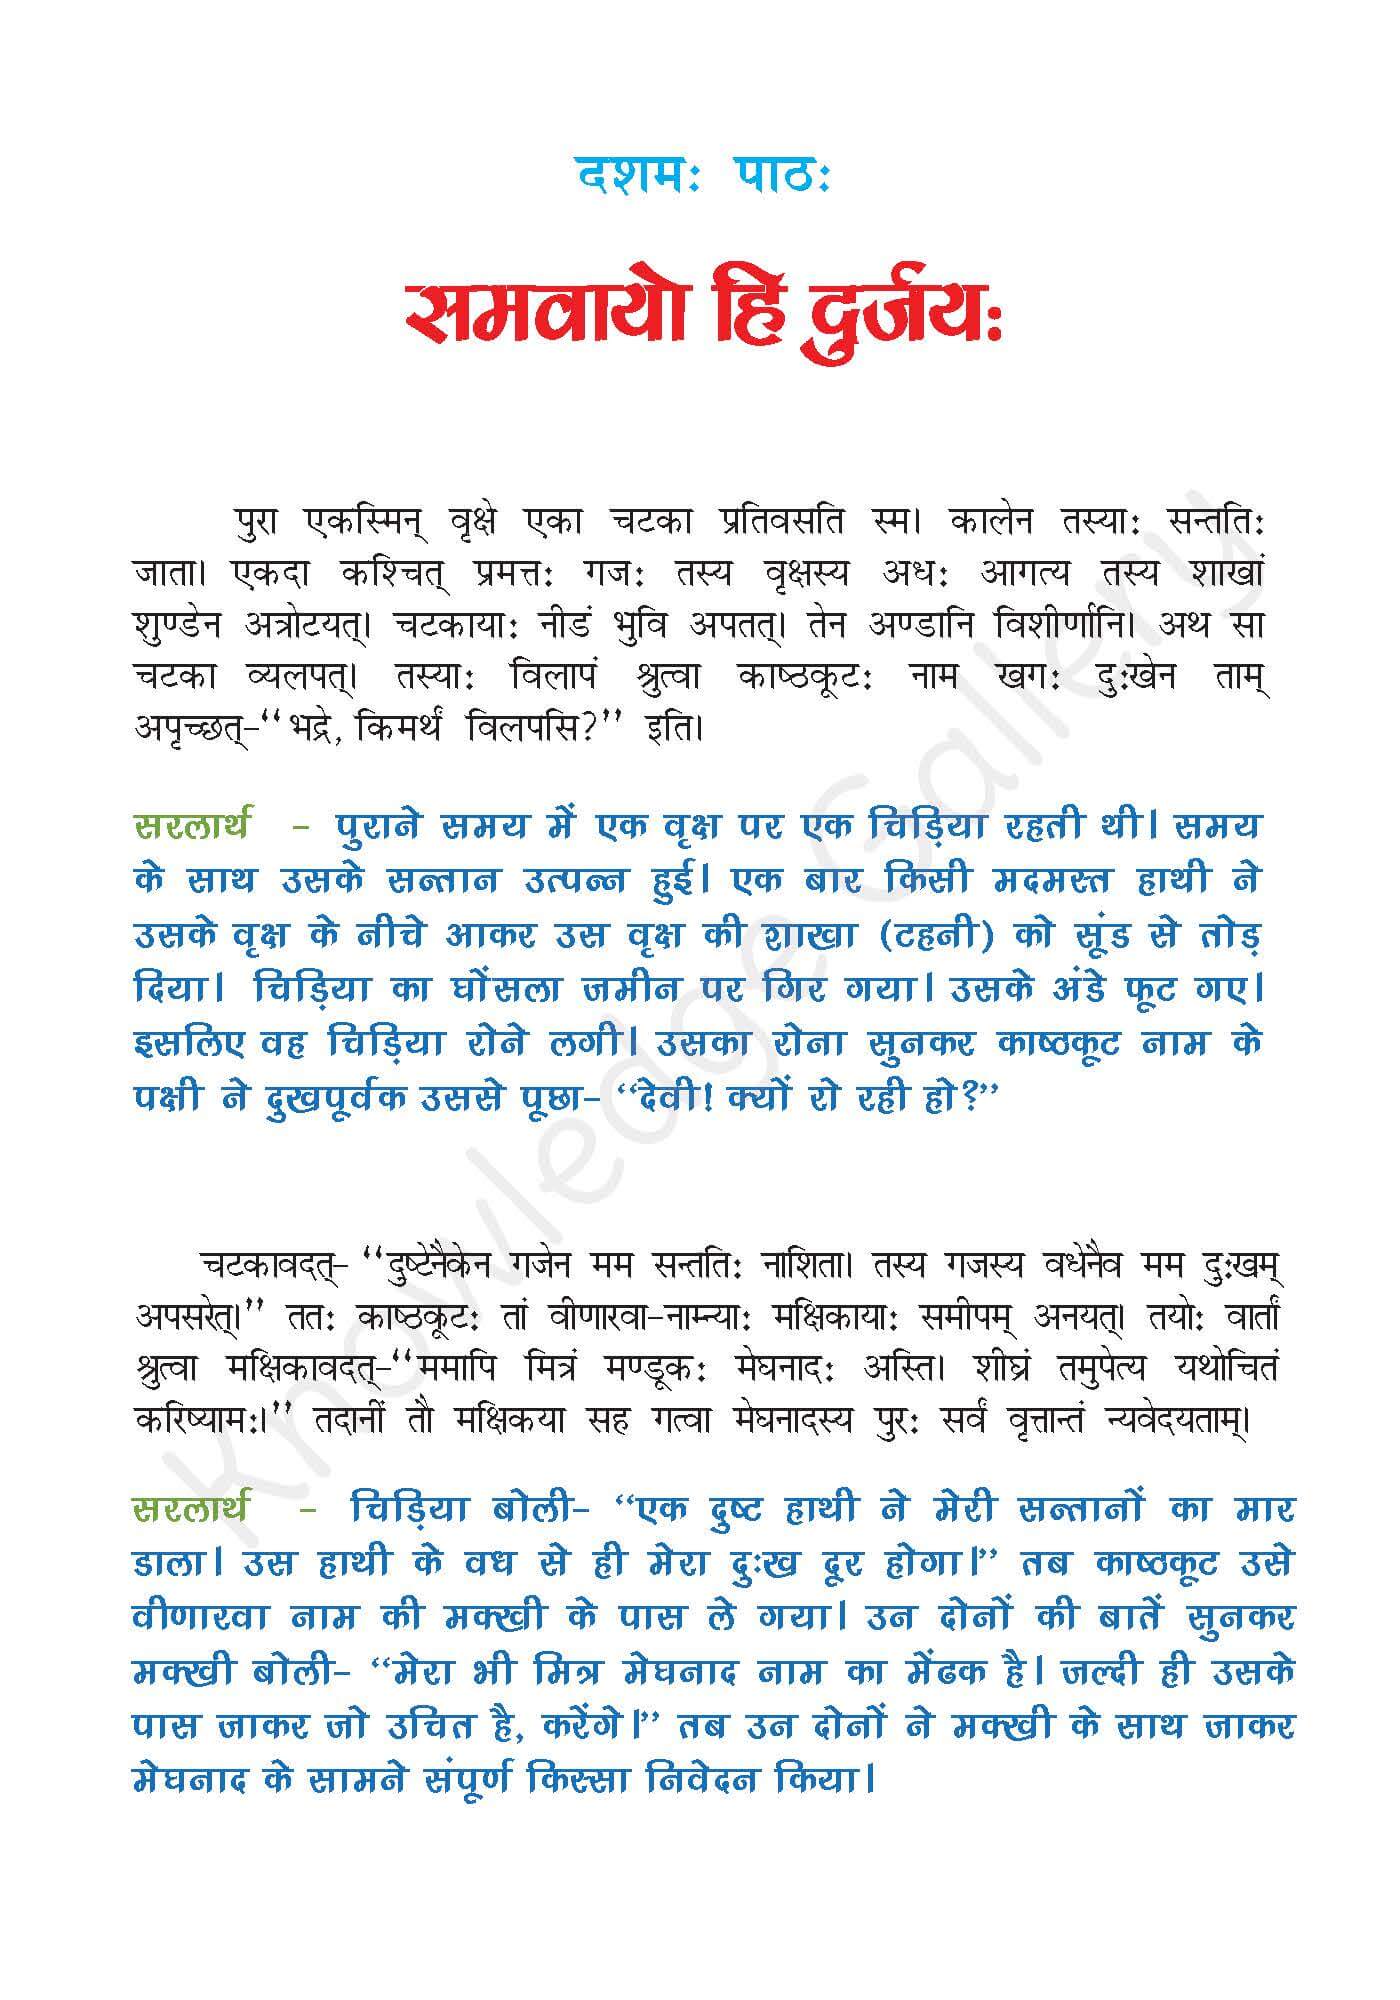 NCERT Solution For Class 7 Sanskrit Chapter 10 part 1